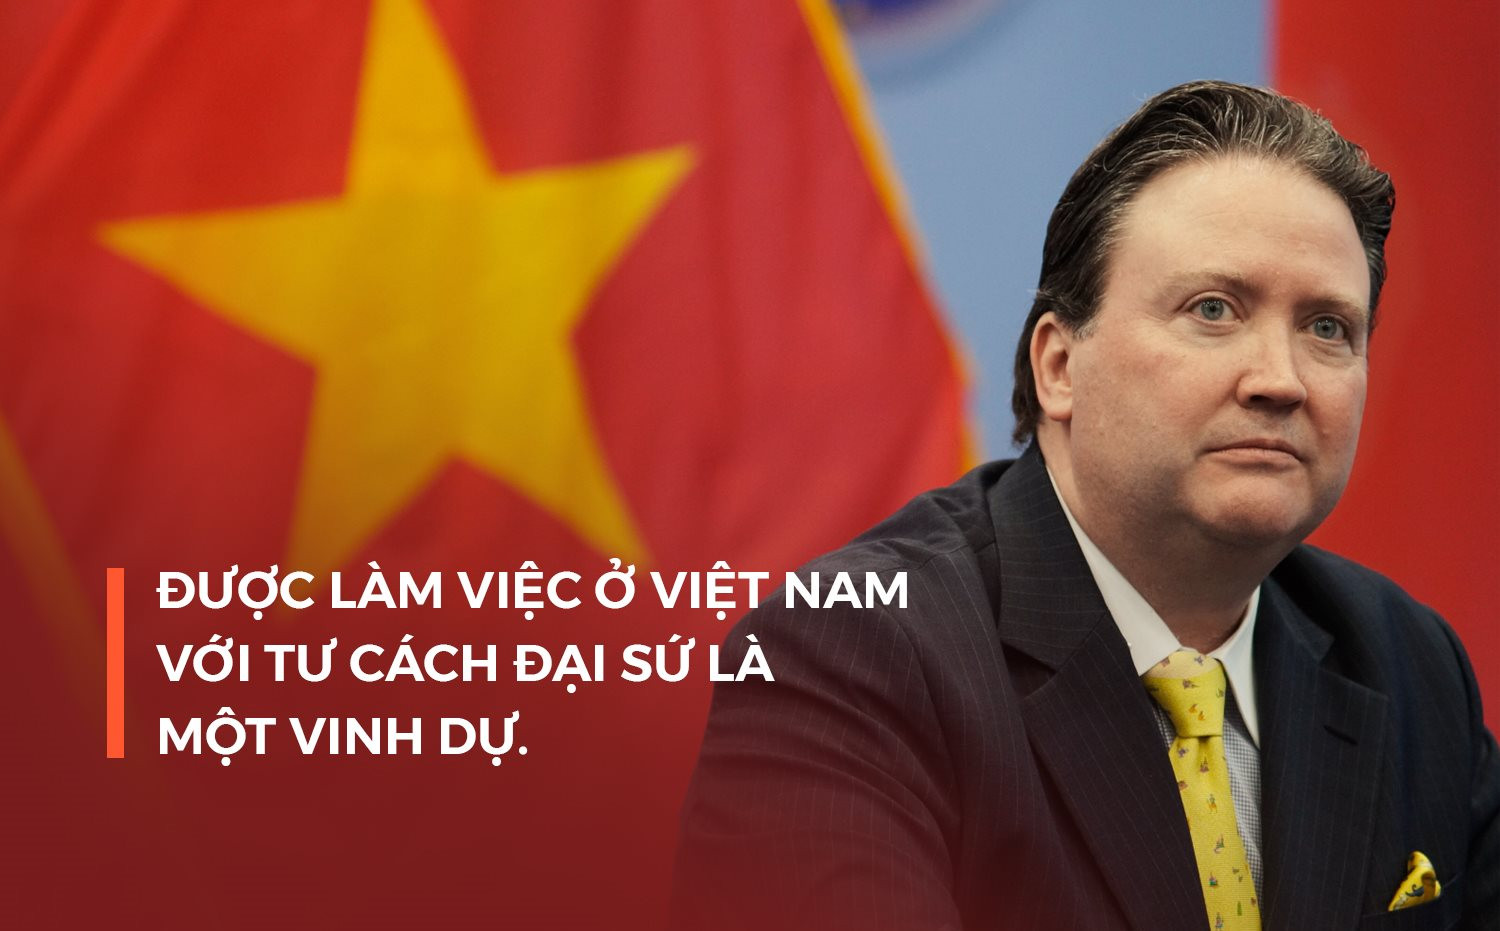 Đại sứ Mỹ: Việt Nam là điểm nhấn thực sự quan trọng trong chuỗi cung ứng bán dẫn toàn cầu